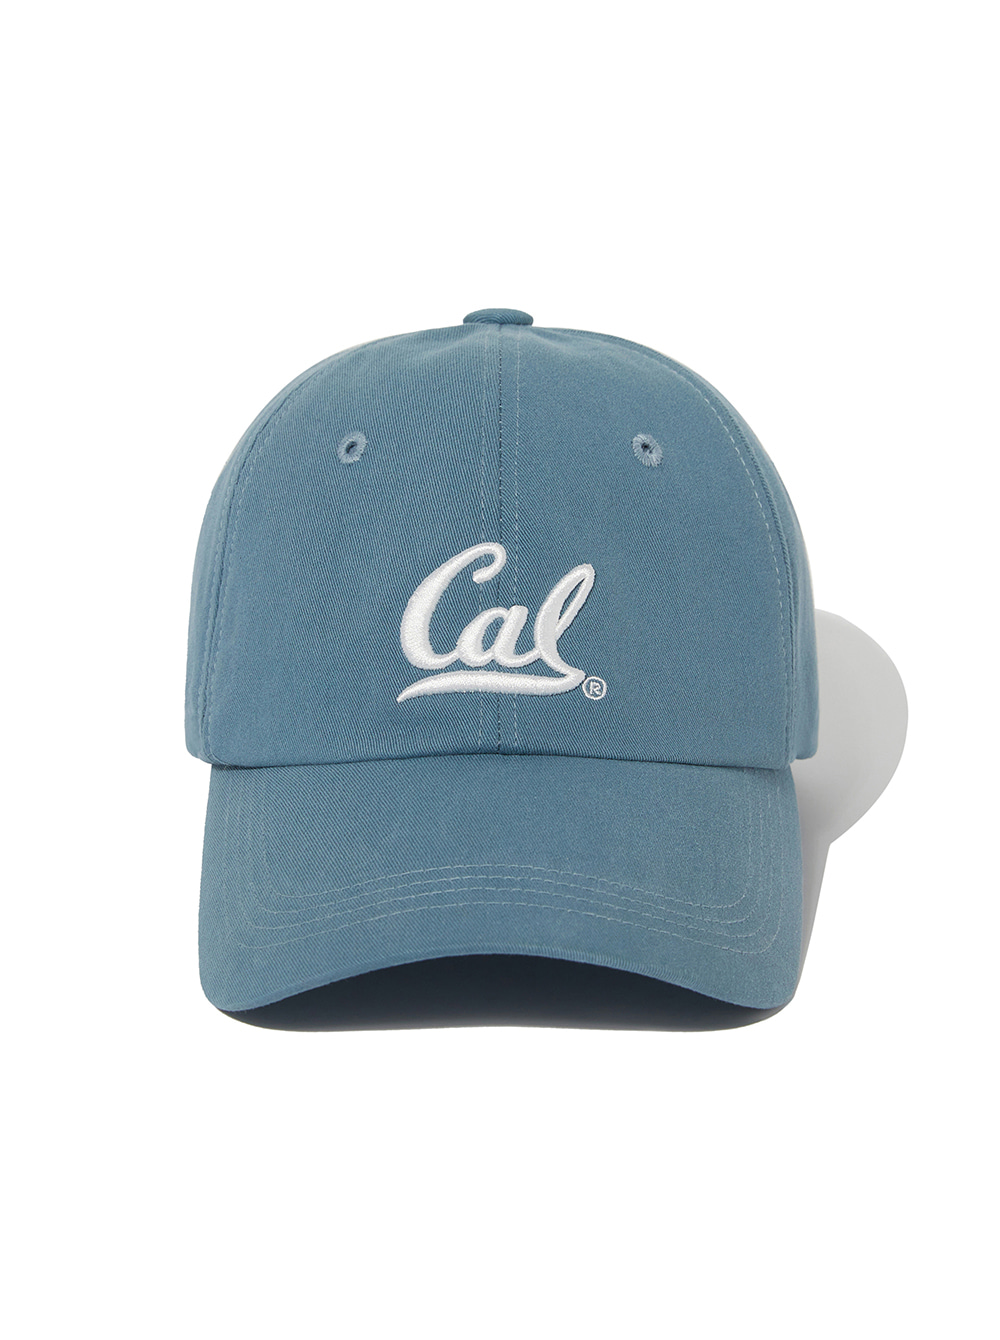 CAL SYMBOL CAP [BLUE]